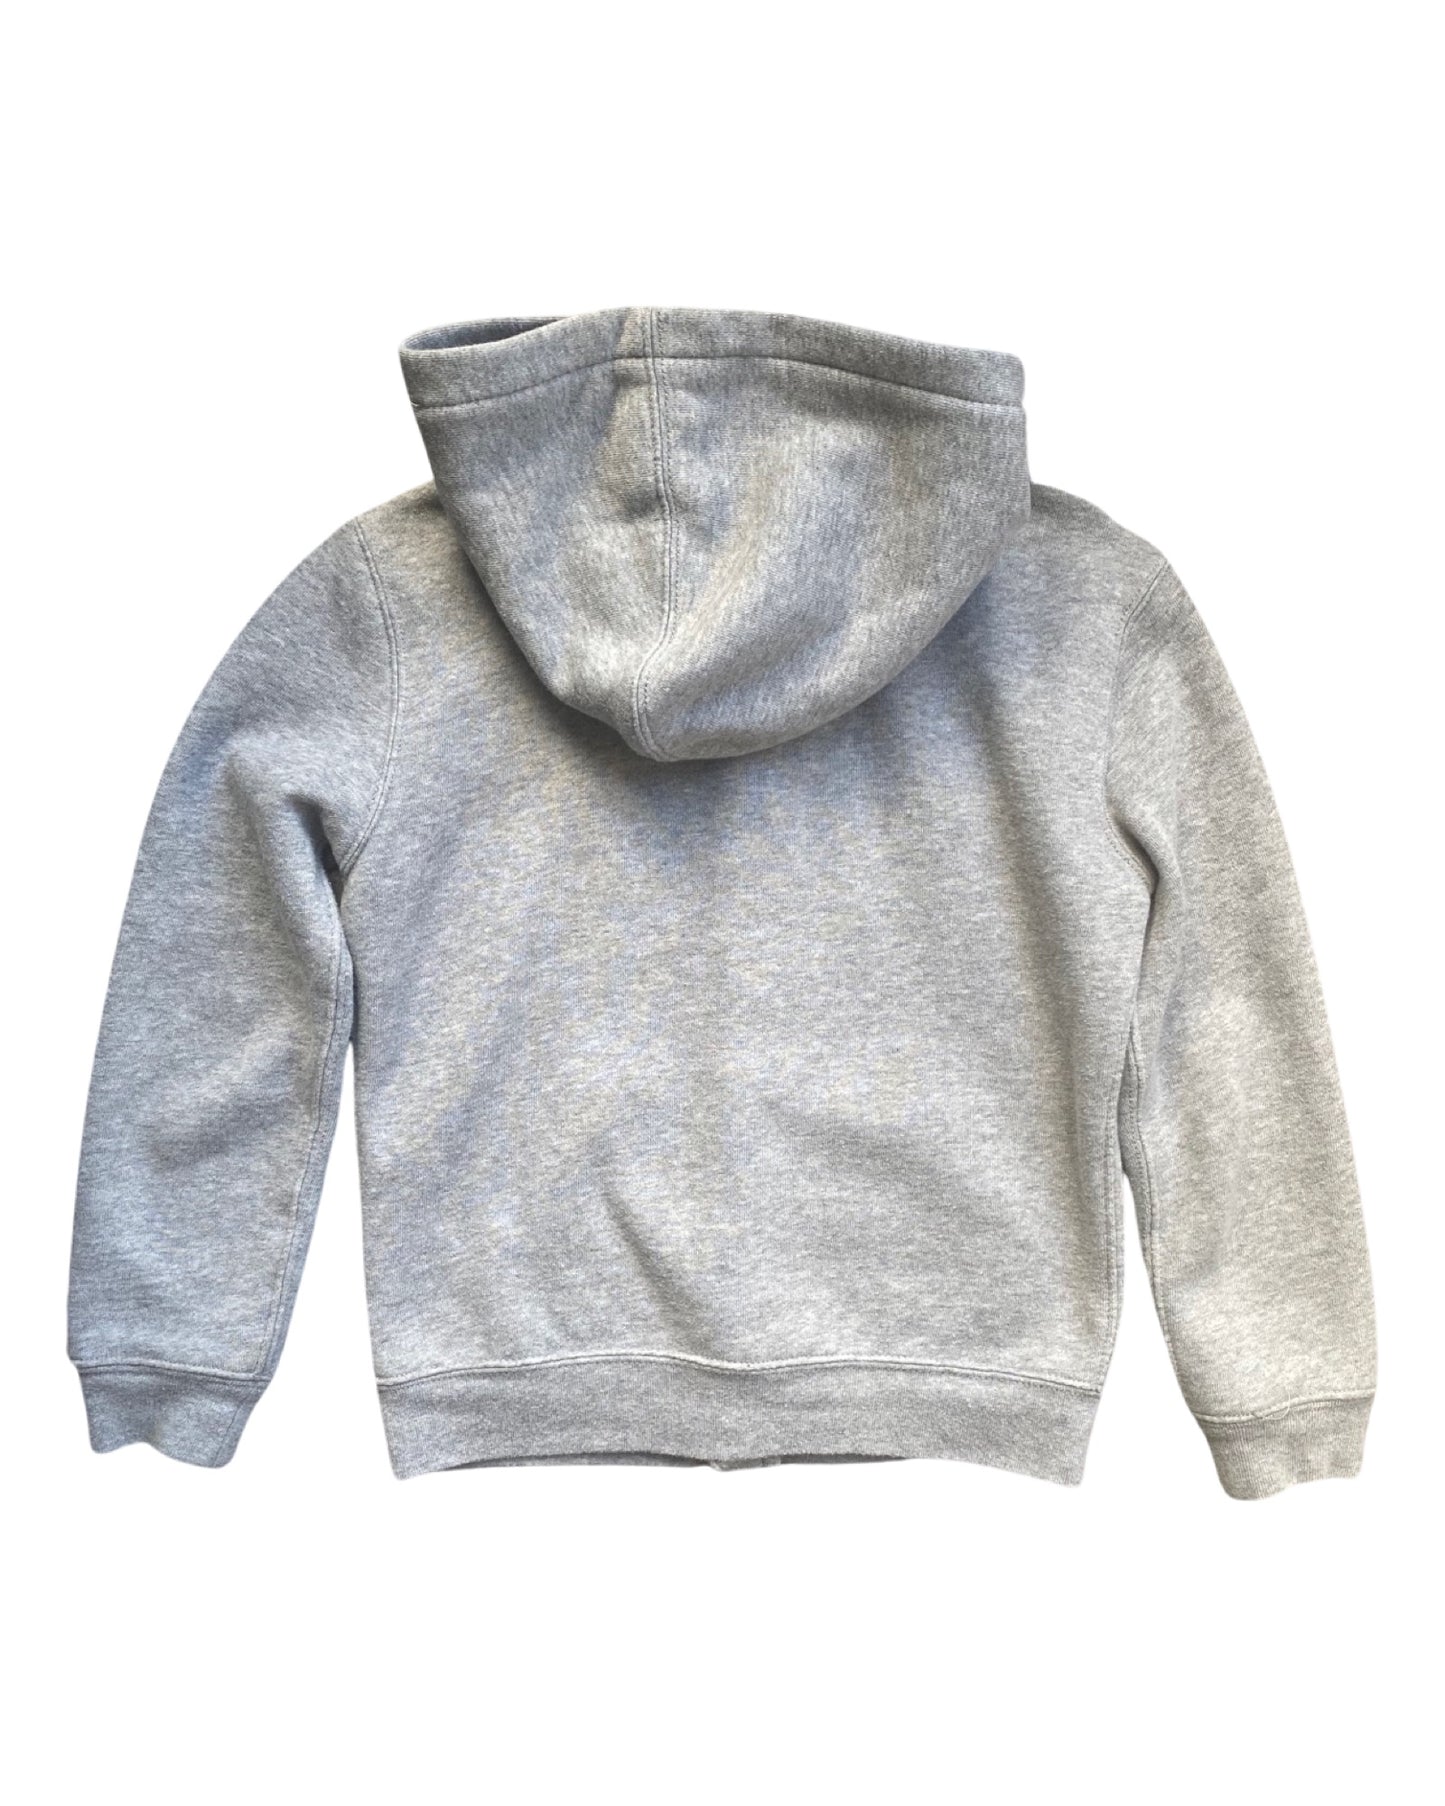 Ralph Lauren Polo zip up hoodie (6-7yrs)